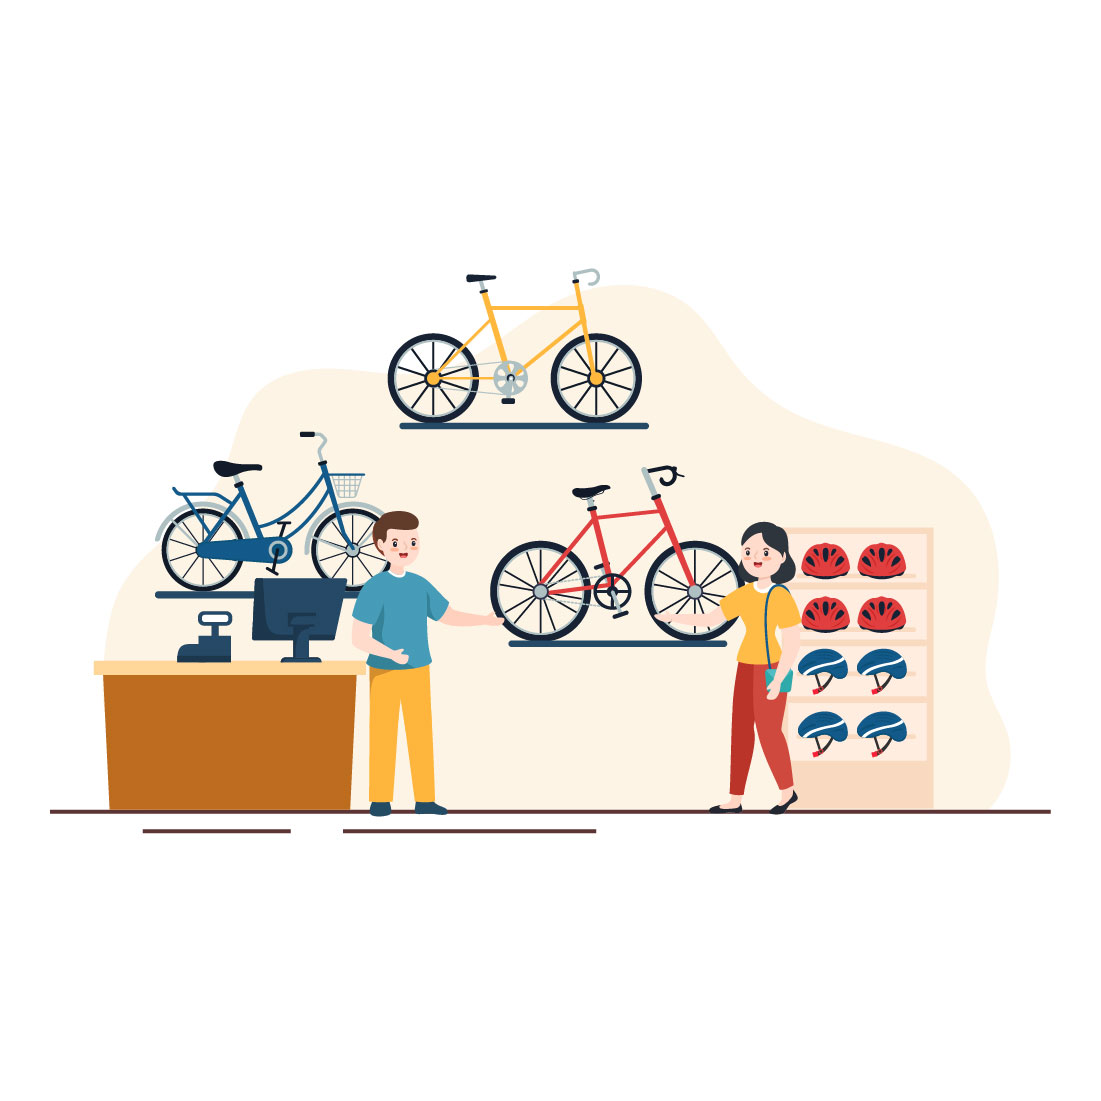 10 Bike Shop Illustration cover image.